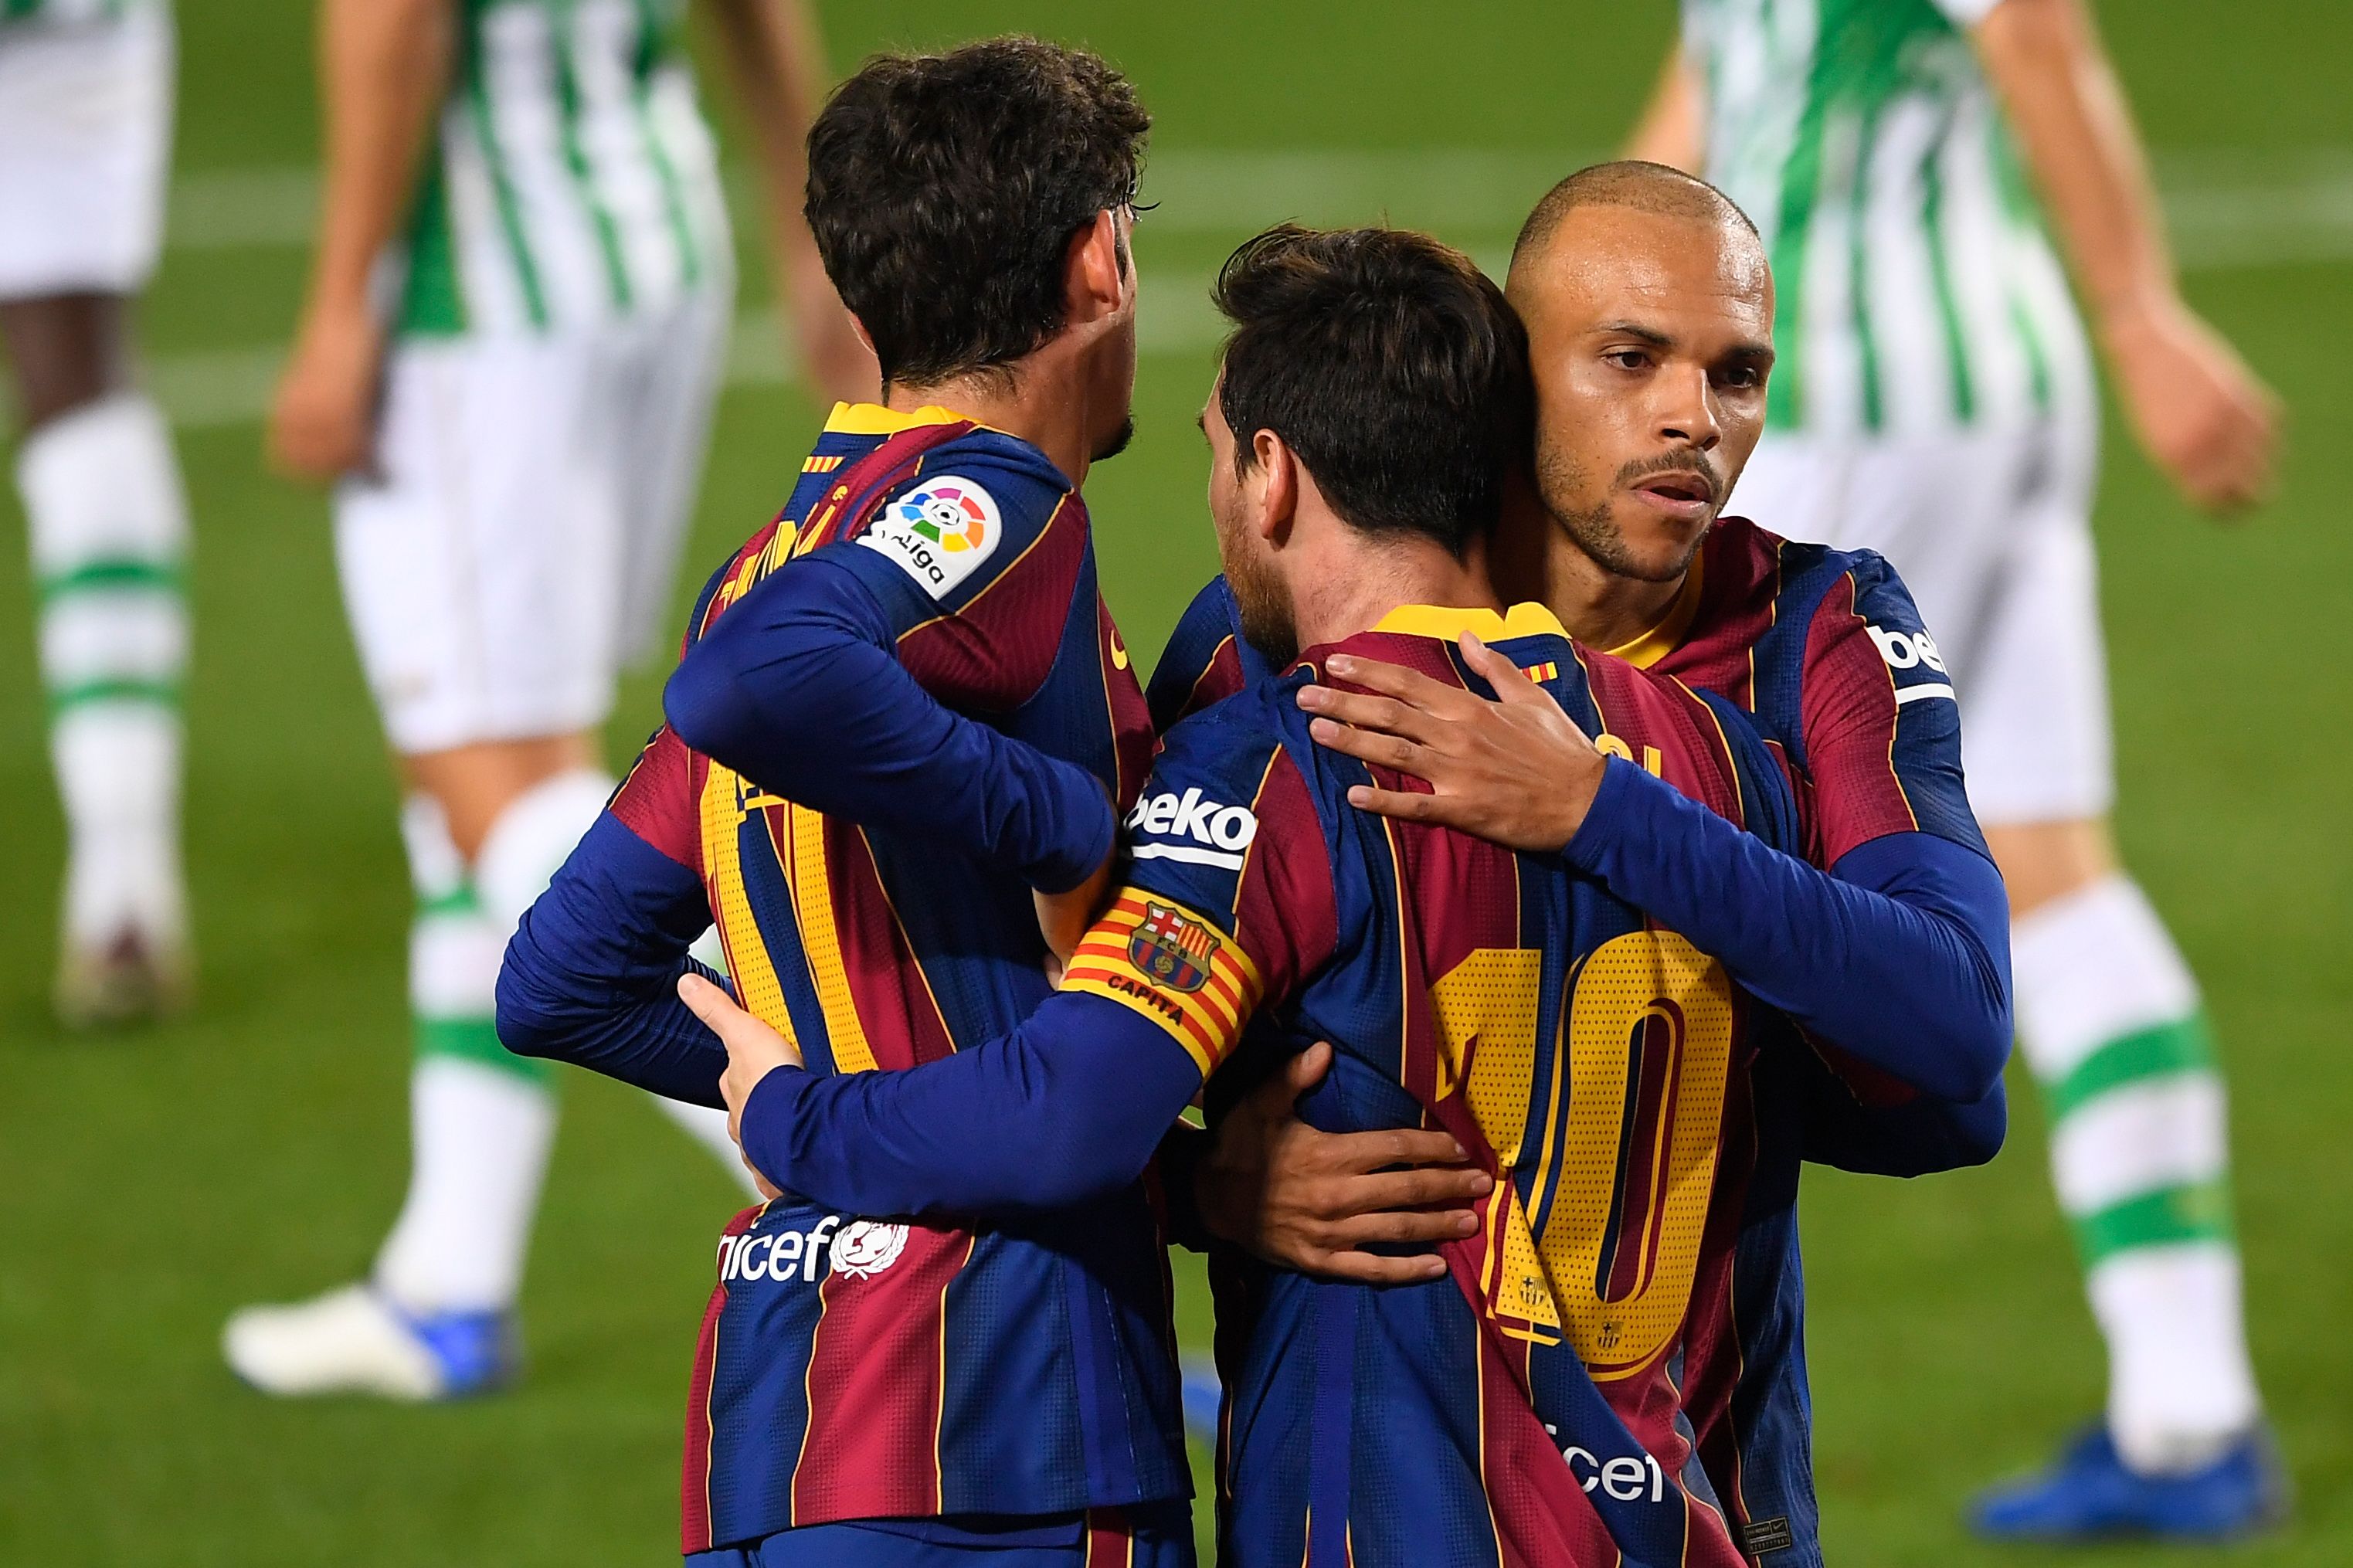 Lionel Messi fue suplente y entró al terreno de juego en el segundo tiempo, el cual aprovechó para anotar un doblete ante el Betis. (Foto Prensa libre: AFP)